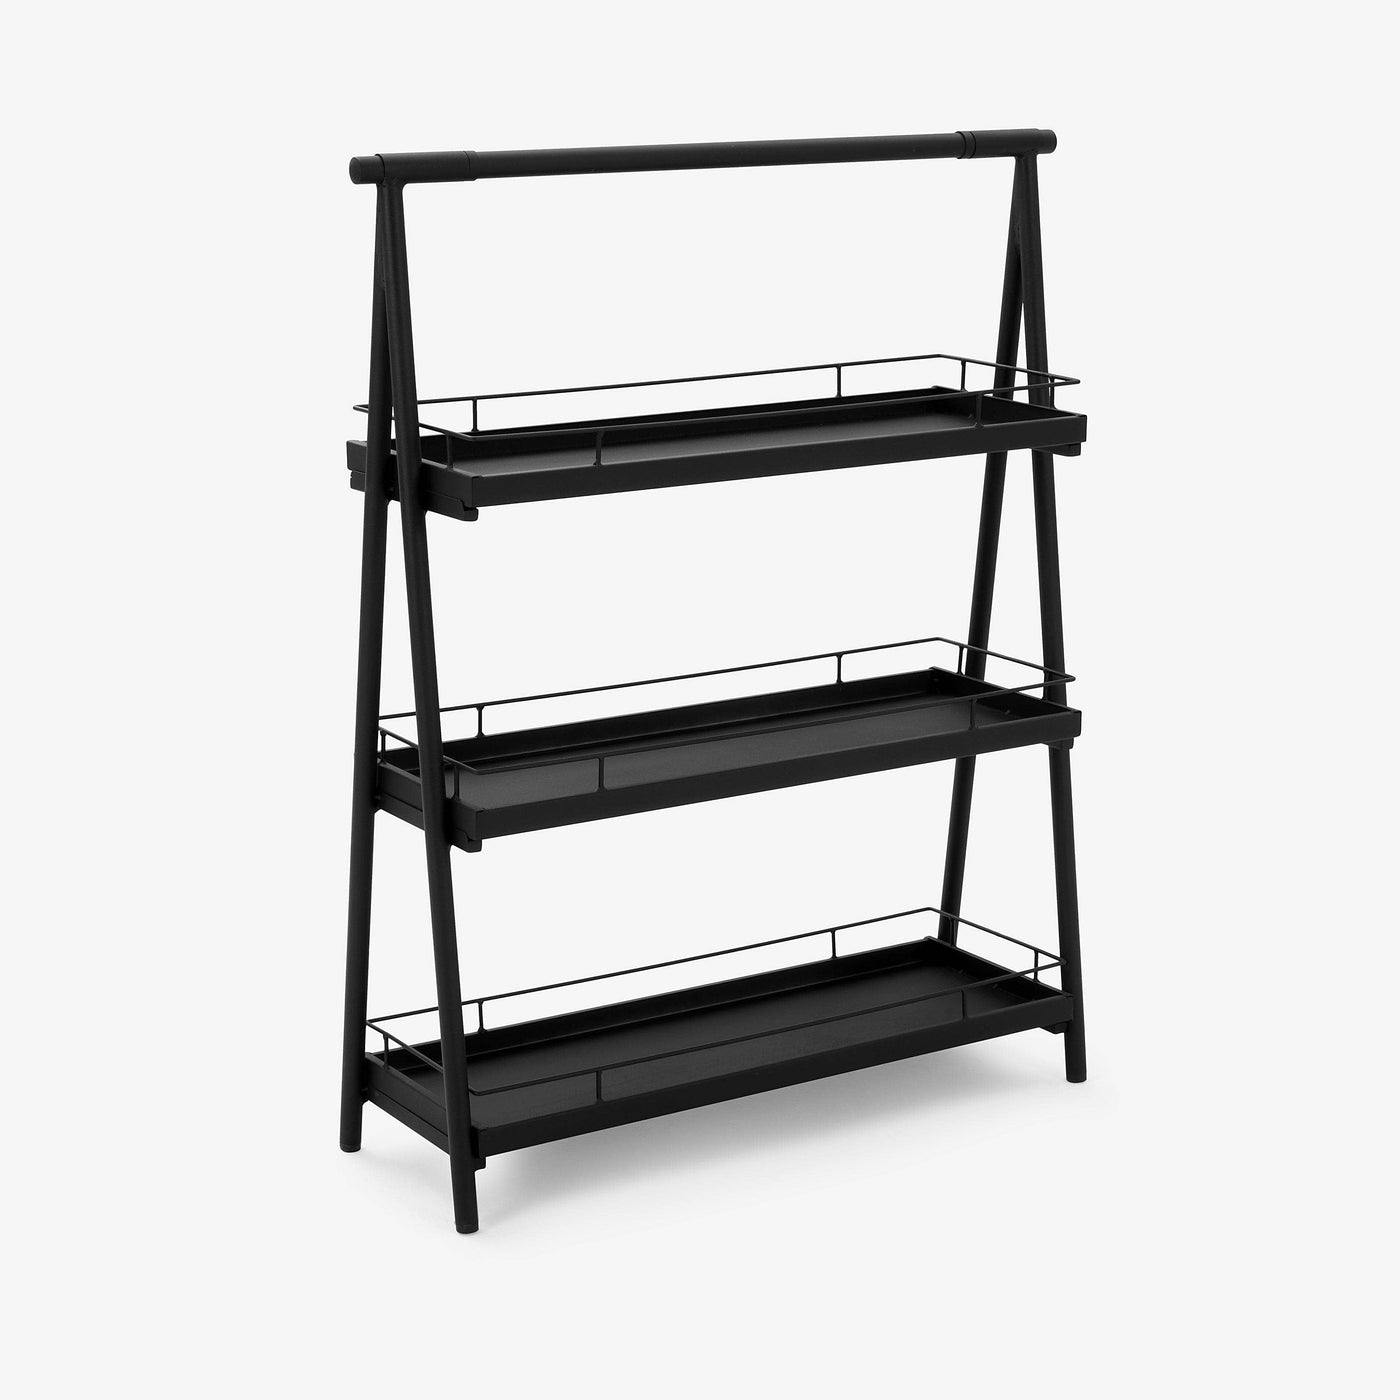 Trerostar Metal Shelf, Black Bookcases & Shelving Units sazy.com